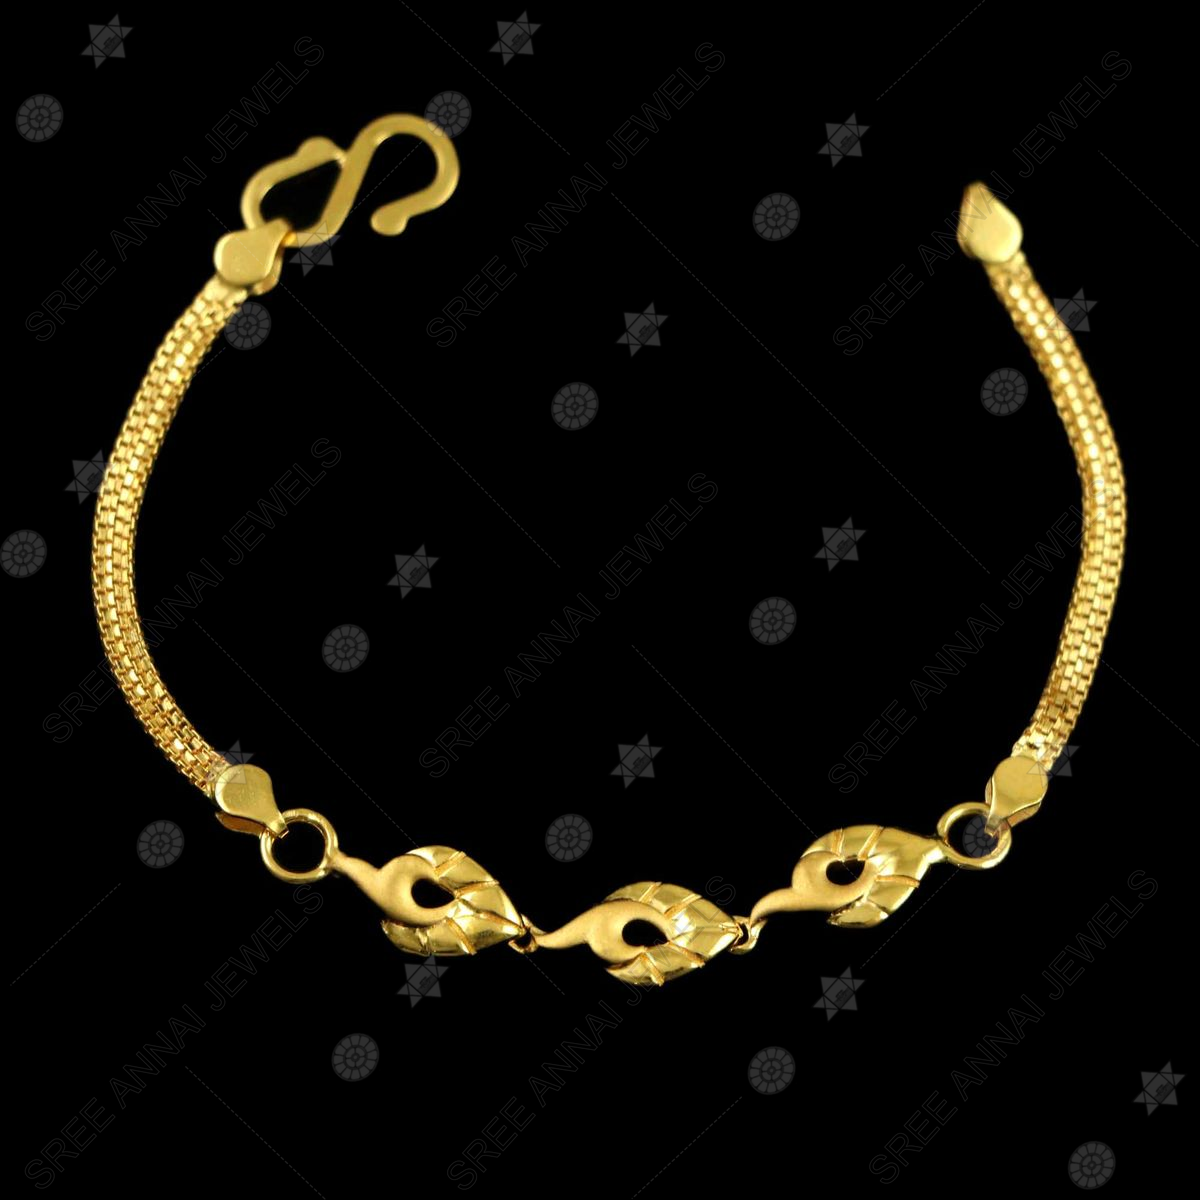 Gold Balls Baby Bracelets | Baby bracelet, Jewelry model, Gold